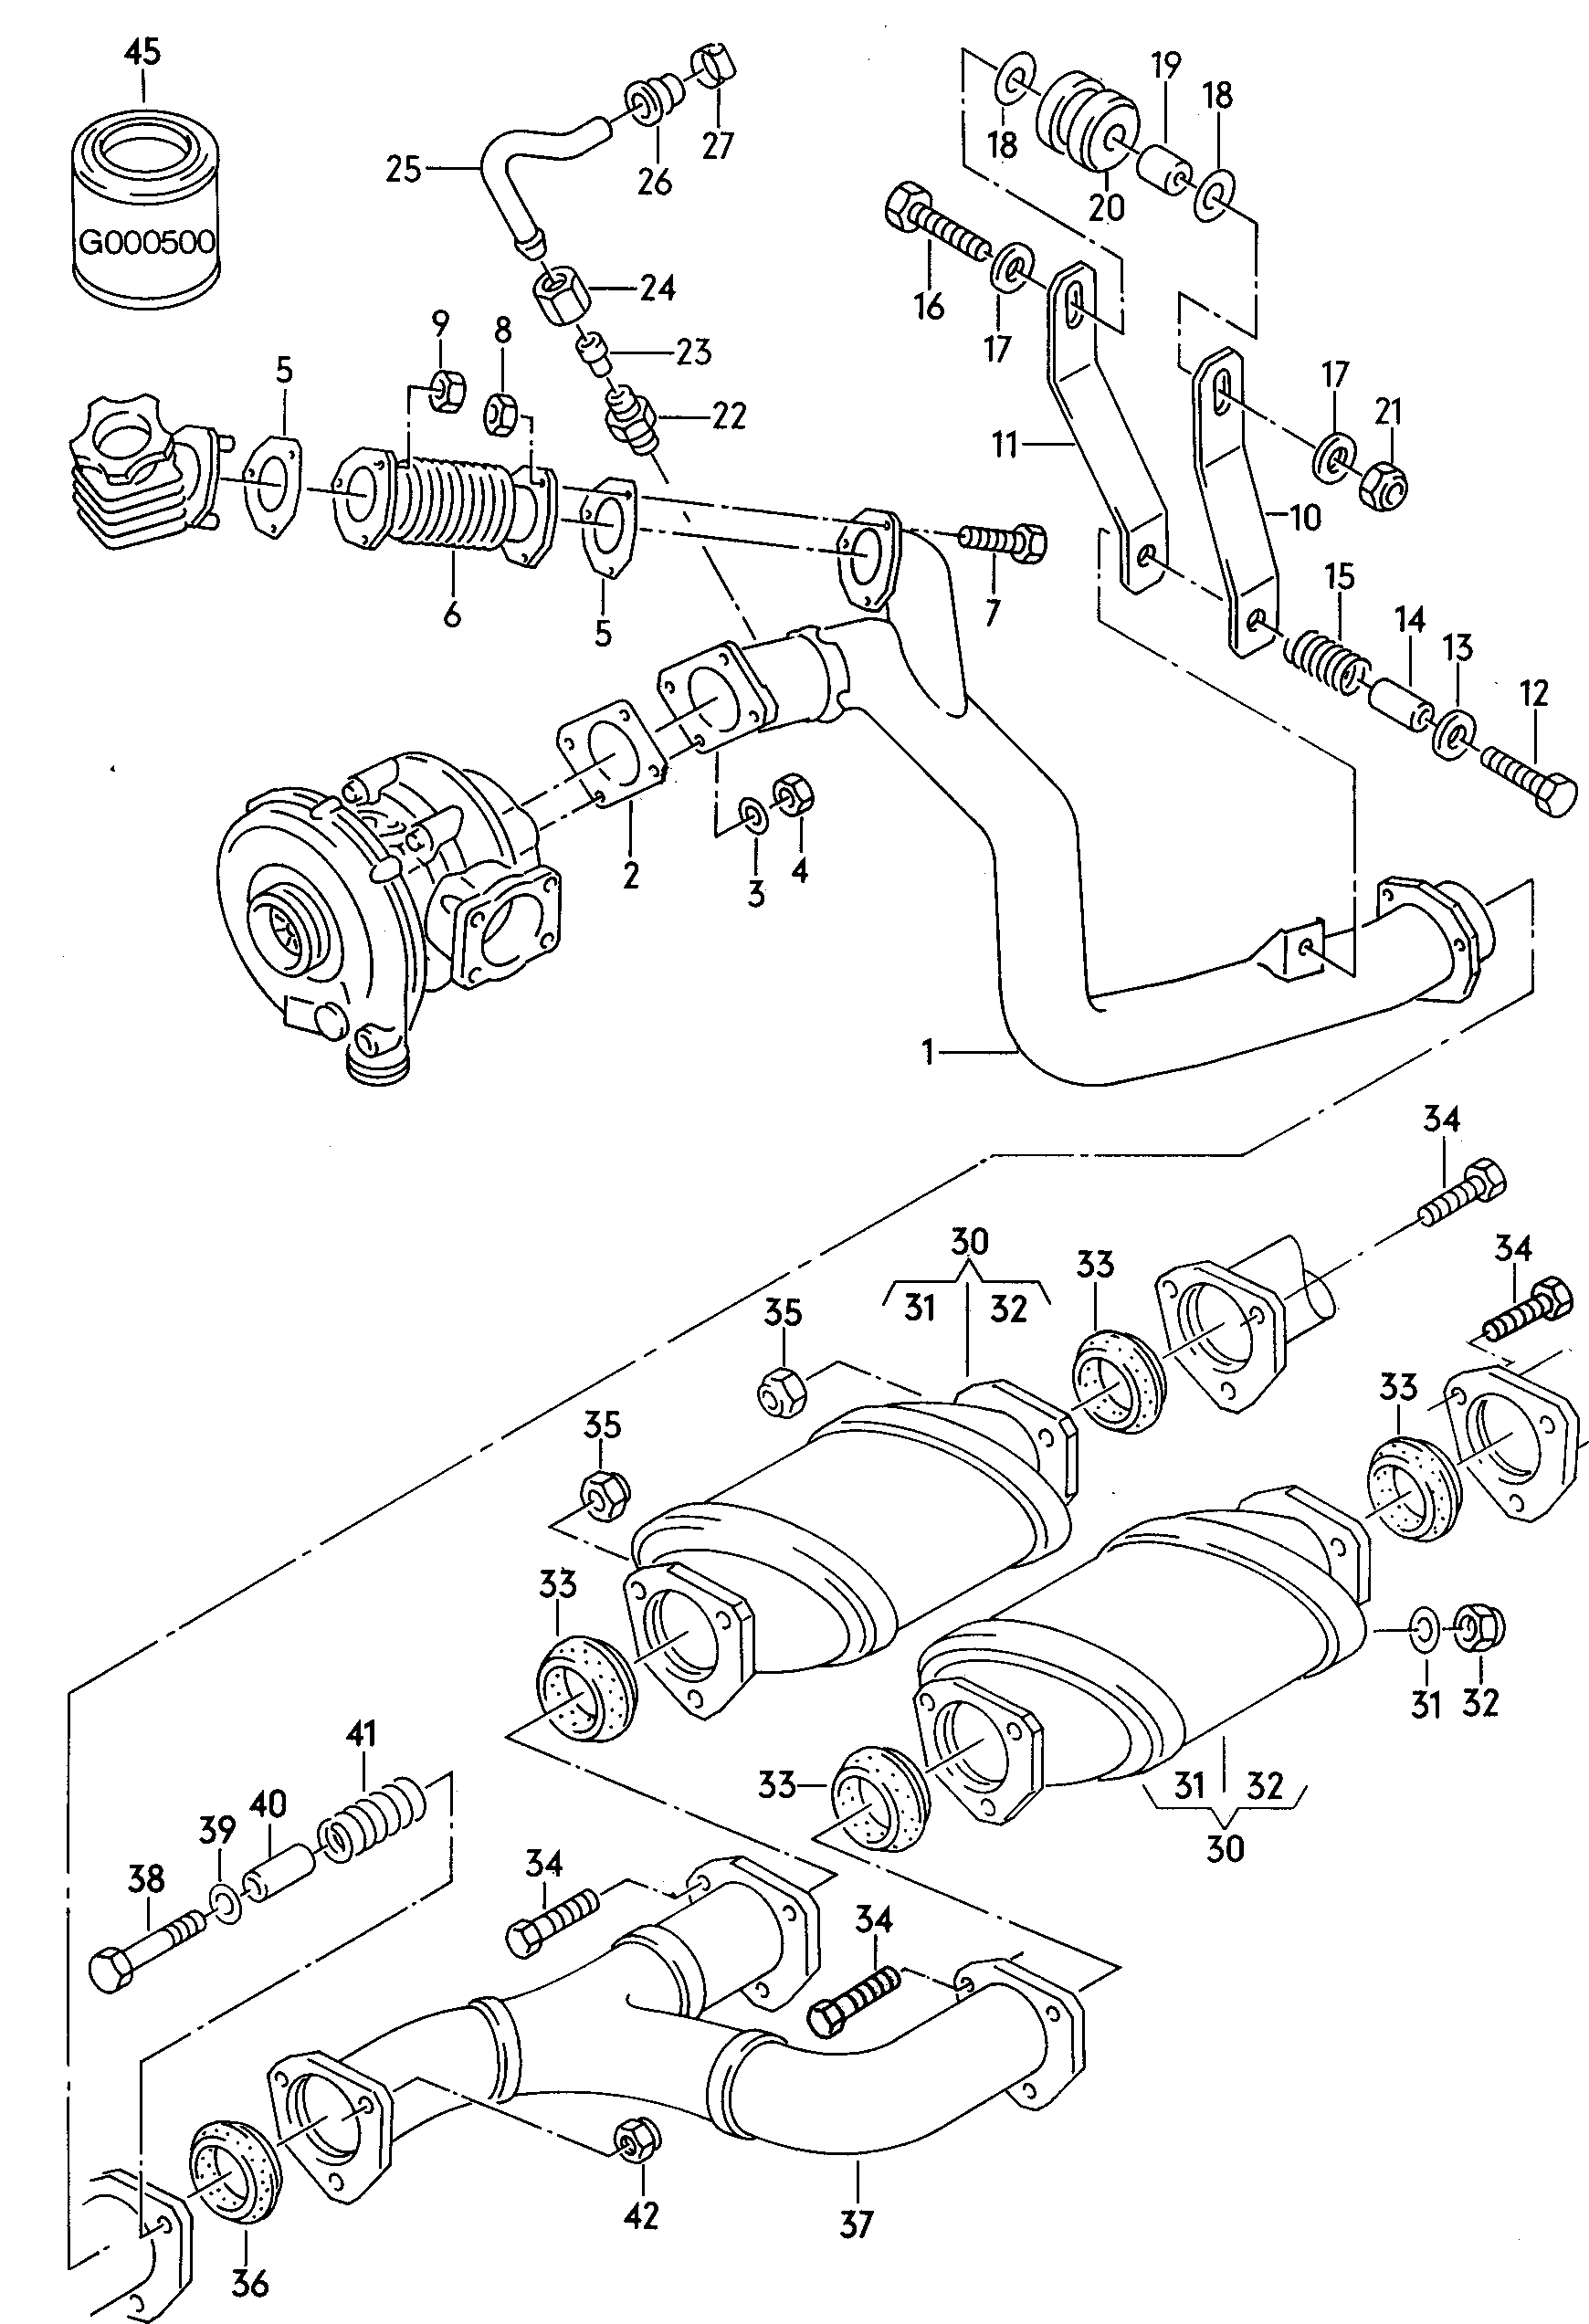 VerbindingspijpKatalysator  - Audi Coupe quattro - acoq